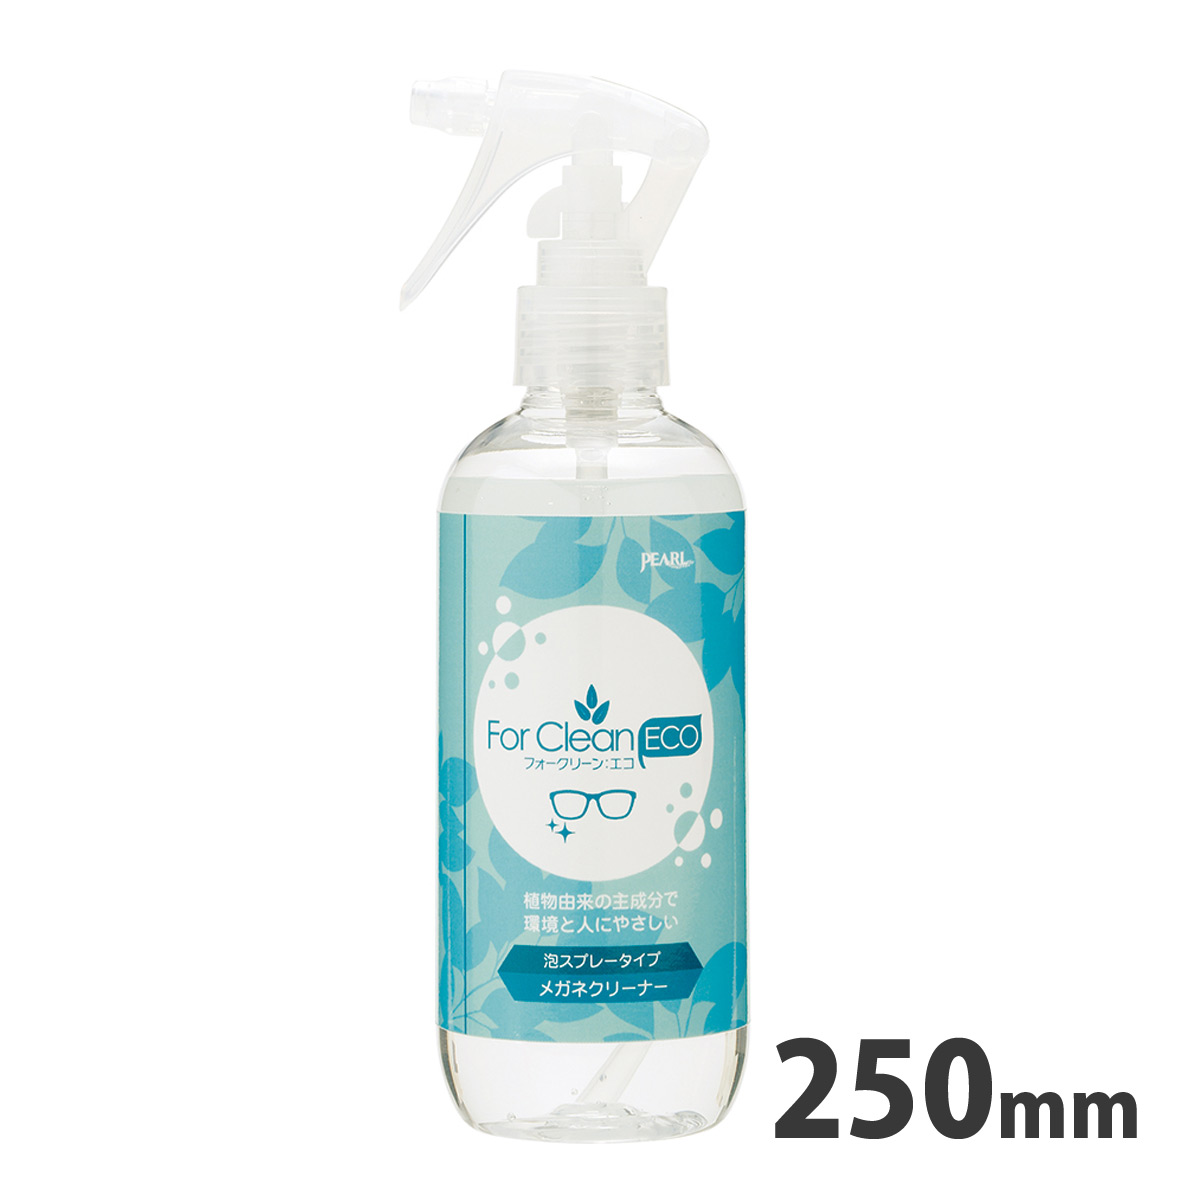 メガネの泡シャンプー フォークリーン:エコ 01283 パール 眼鏡 クリーナー 洗浄 除菌 泡スプレー